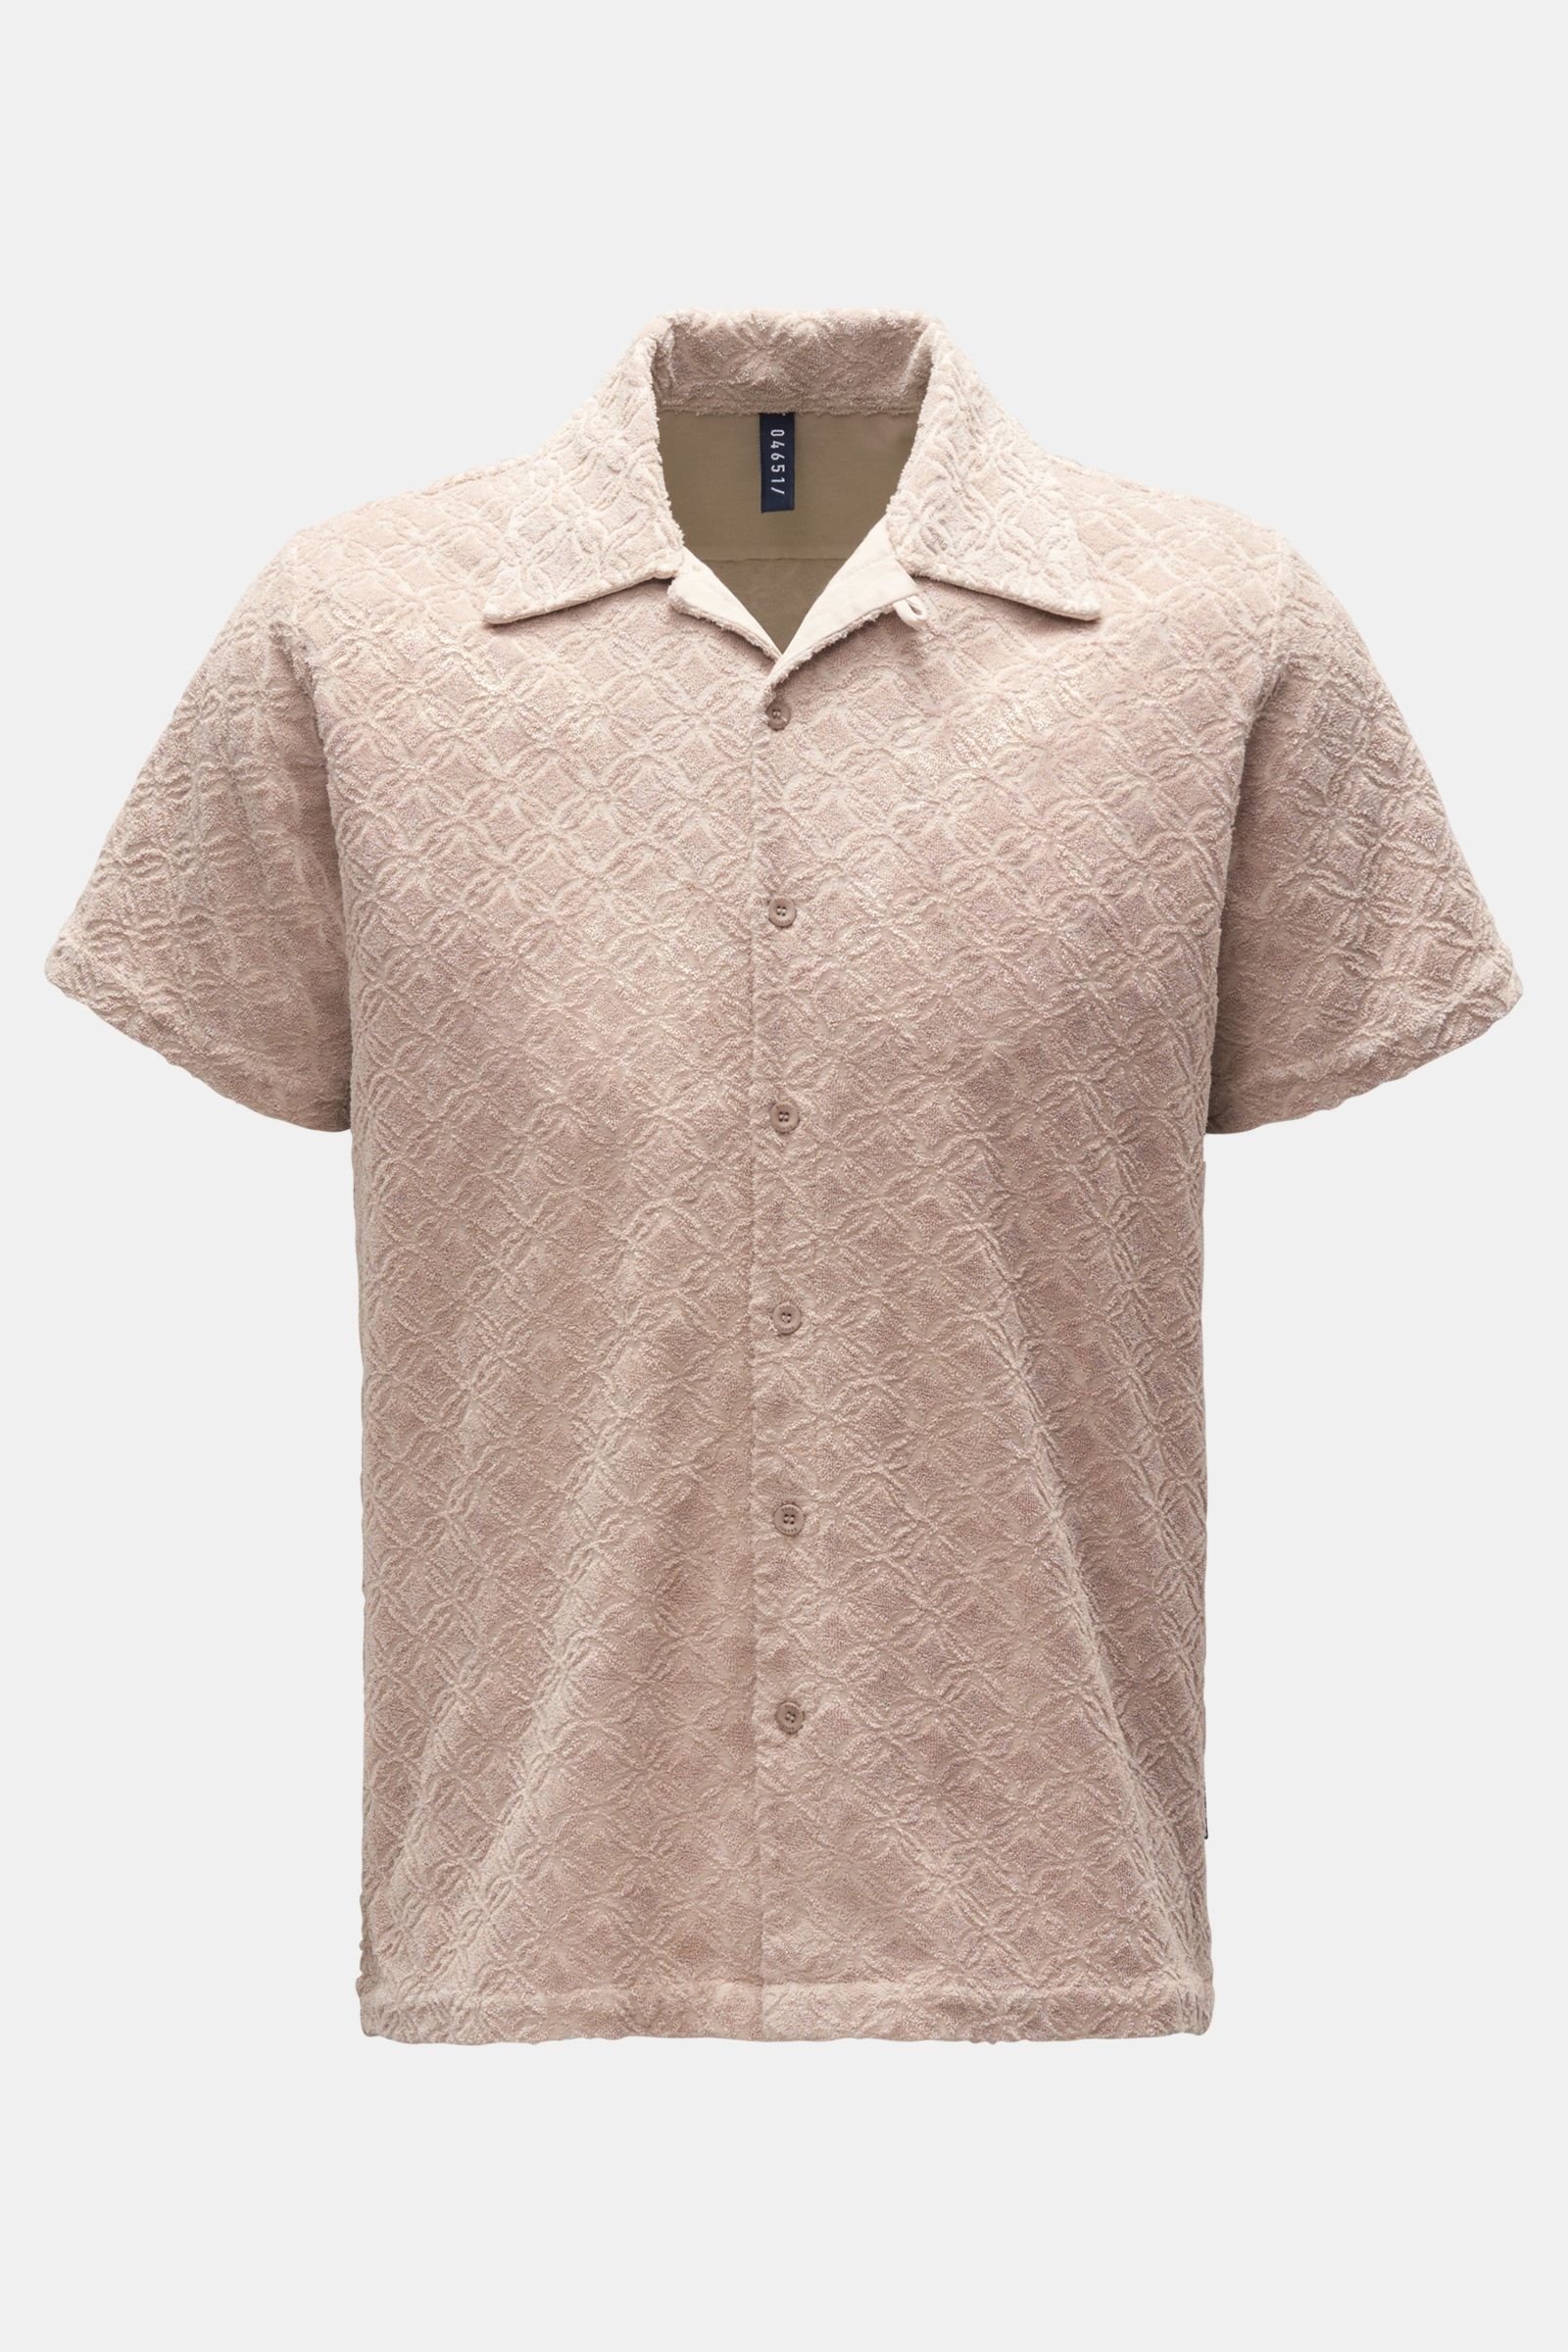 Terry short sleeve shirt 'Terry Shirt' Kent collar beige patterned